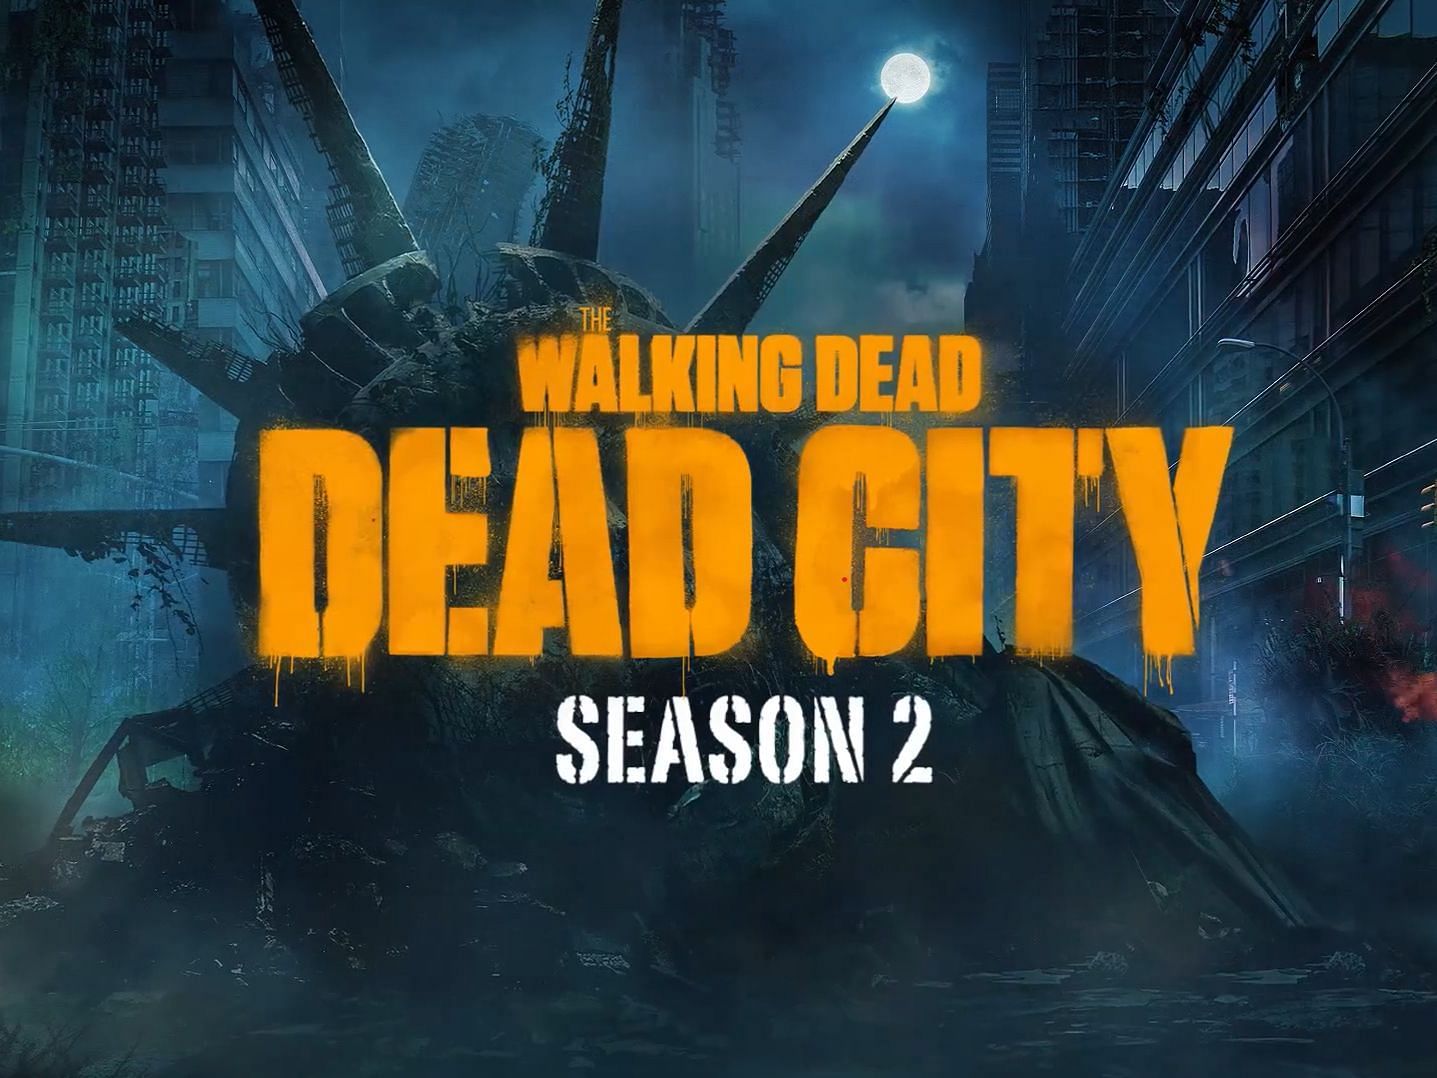 The Walking Dead: Dead City Season 2 will premiere in 2025 (image via YouTube/The Walking Dead)